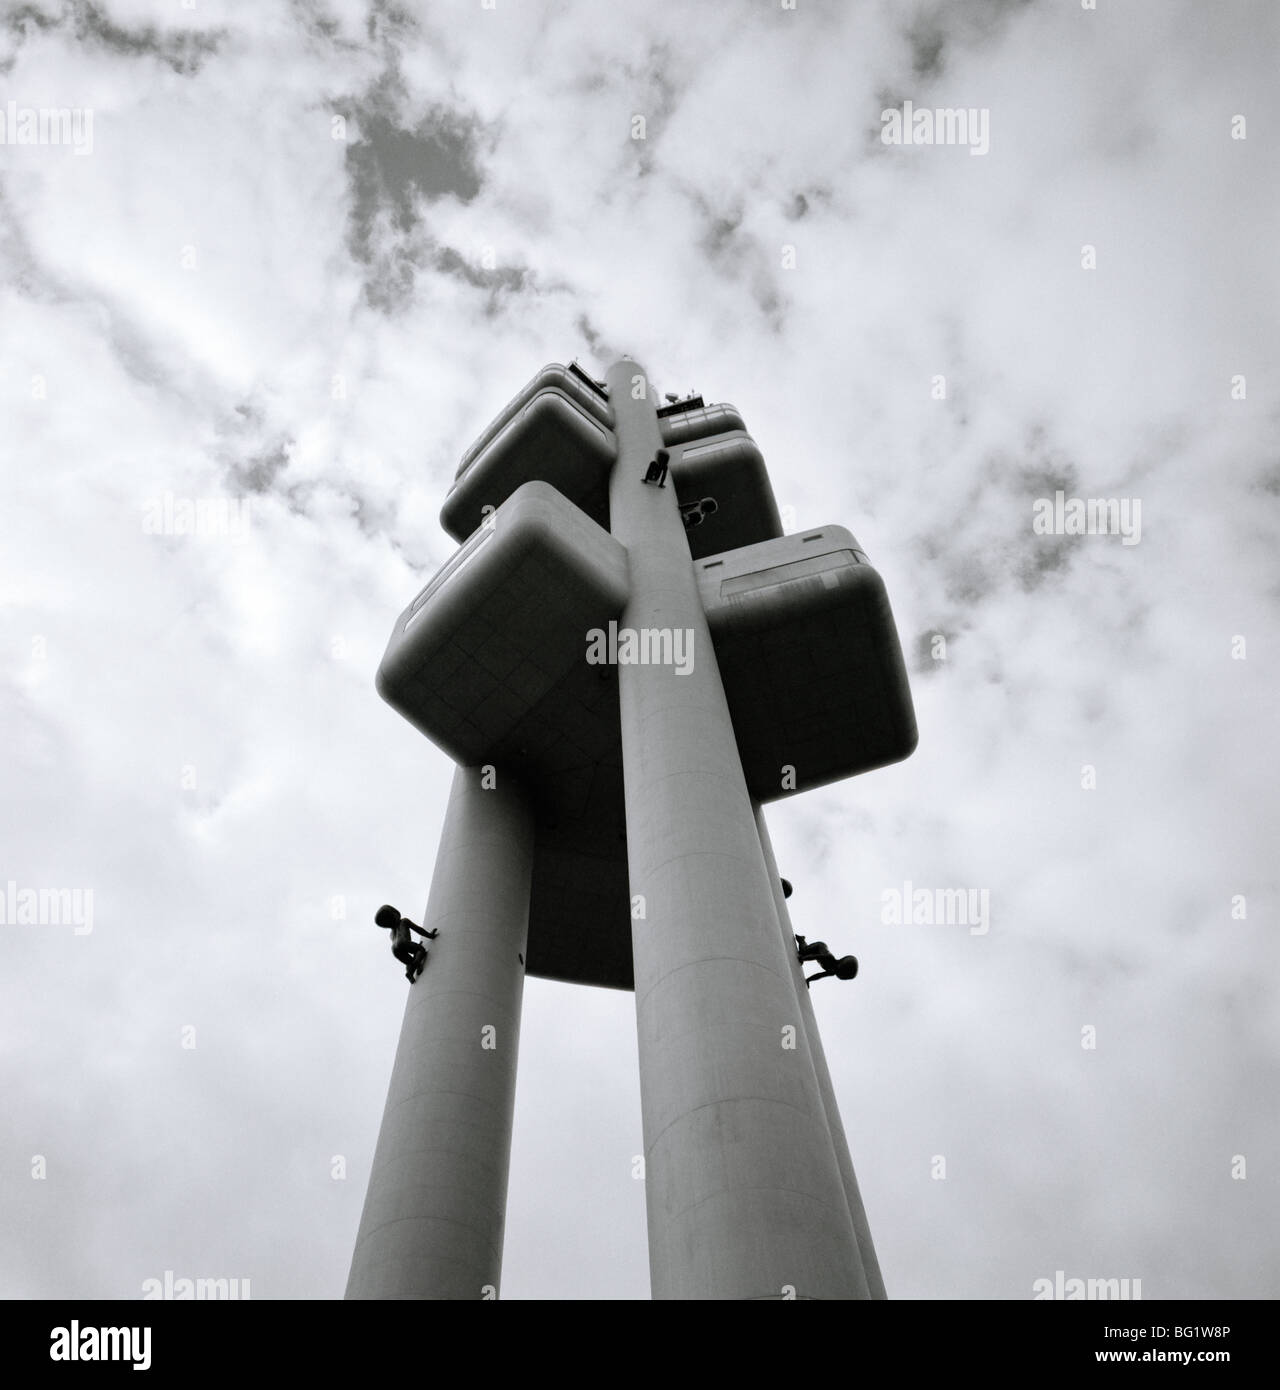 Viaggi nel mondo. David Cerny arte Torre di installazione neonati sul Zizkov TV Tower in Zizkov a Praga in Repubblica Ceca in Europa Orientale. Cultura Foto Stock